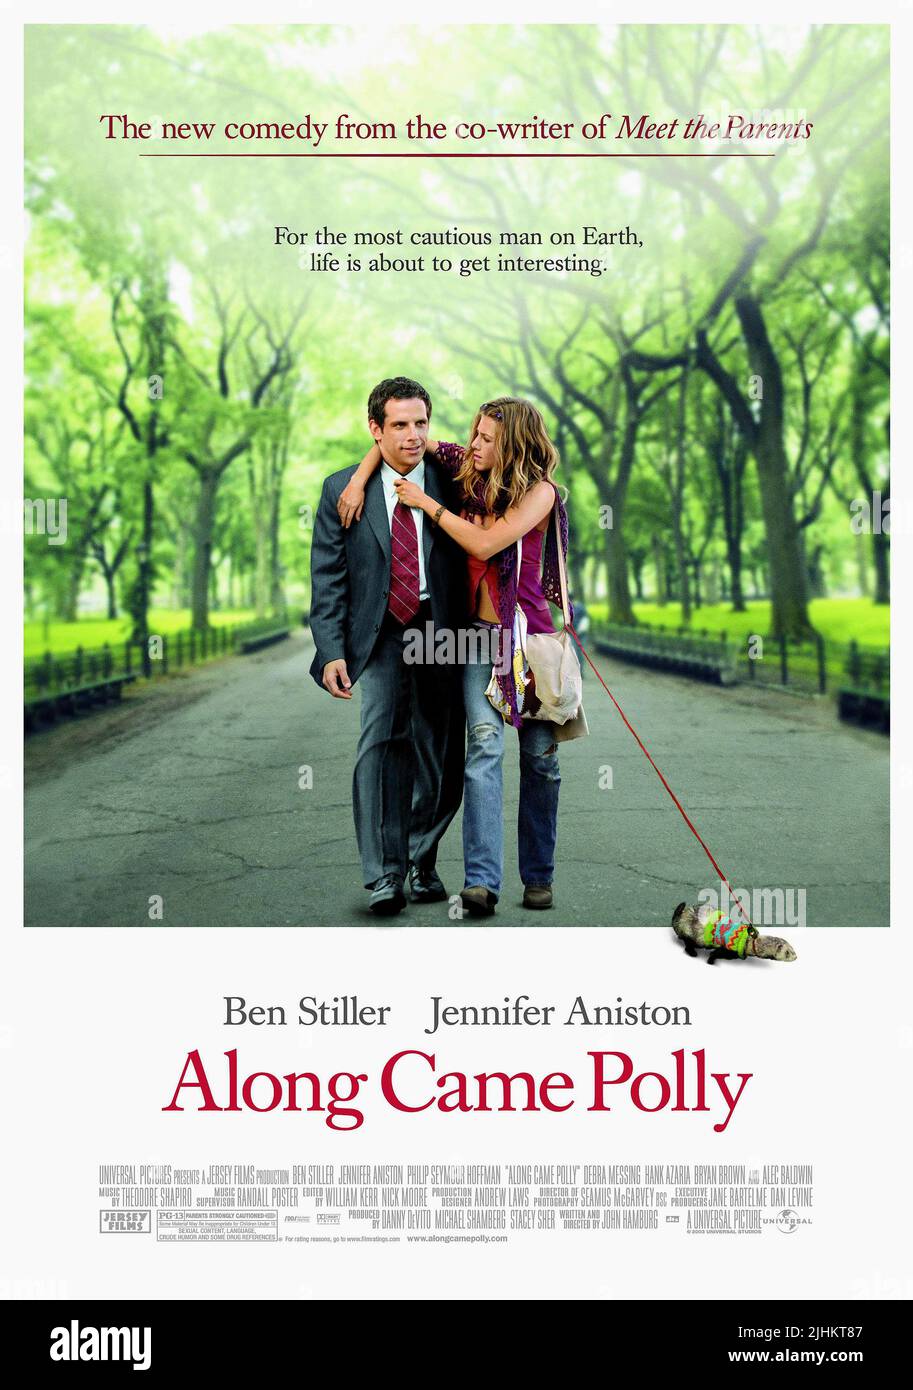 Along came polly film poster fotografías e imágenes de alta resolución -  Alamy